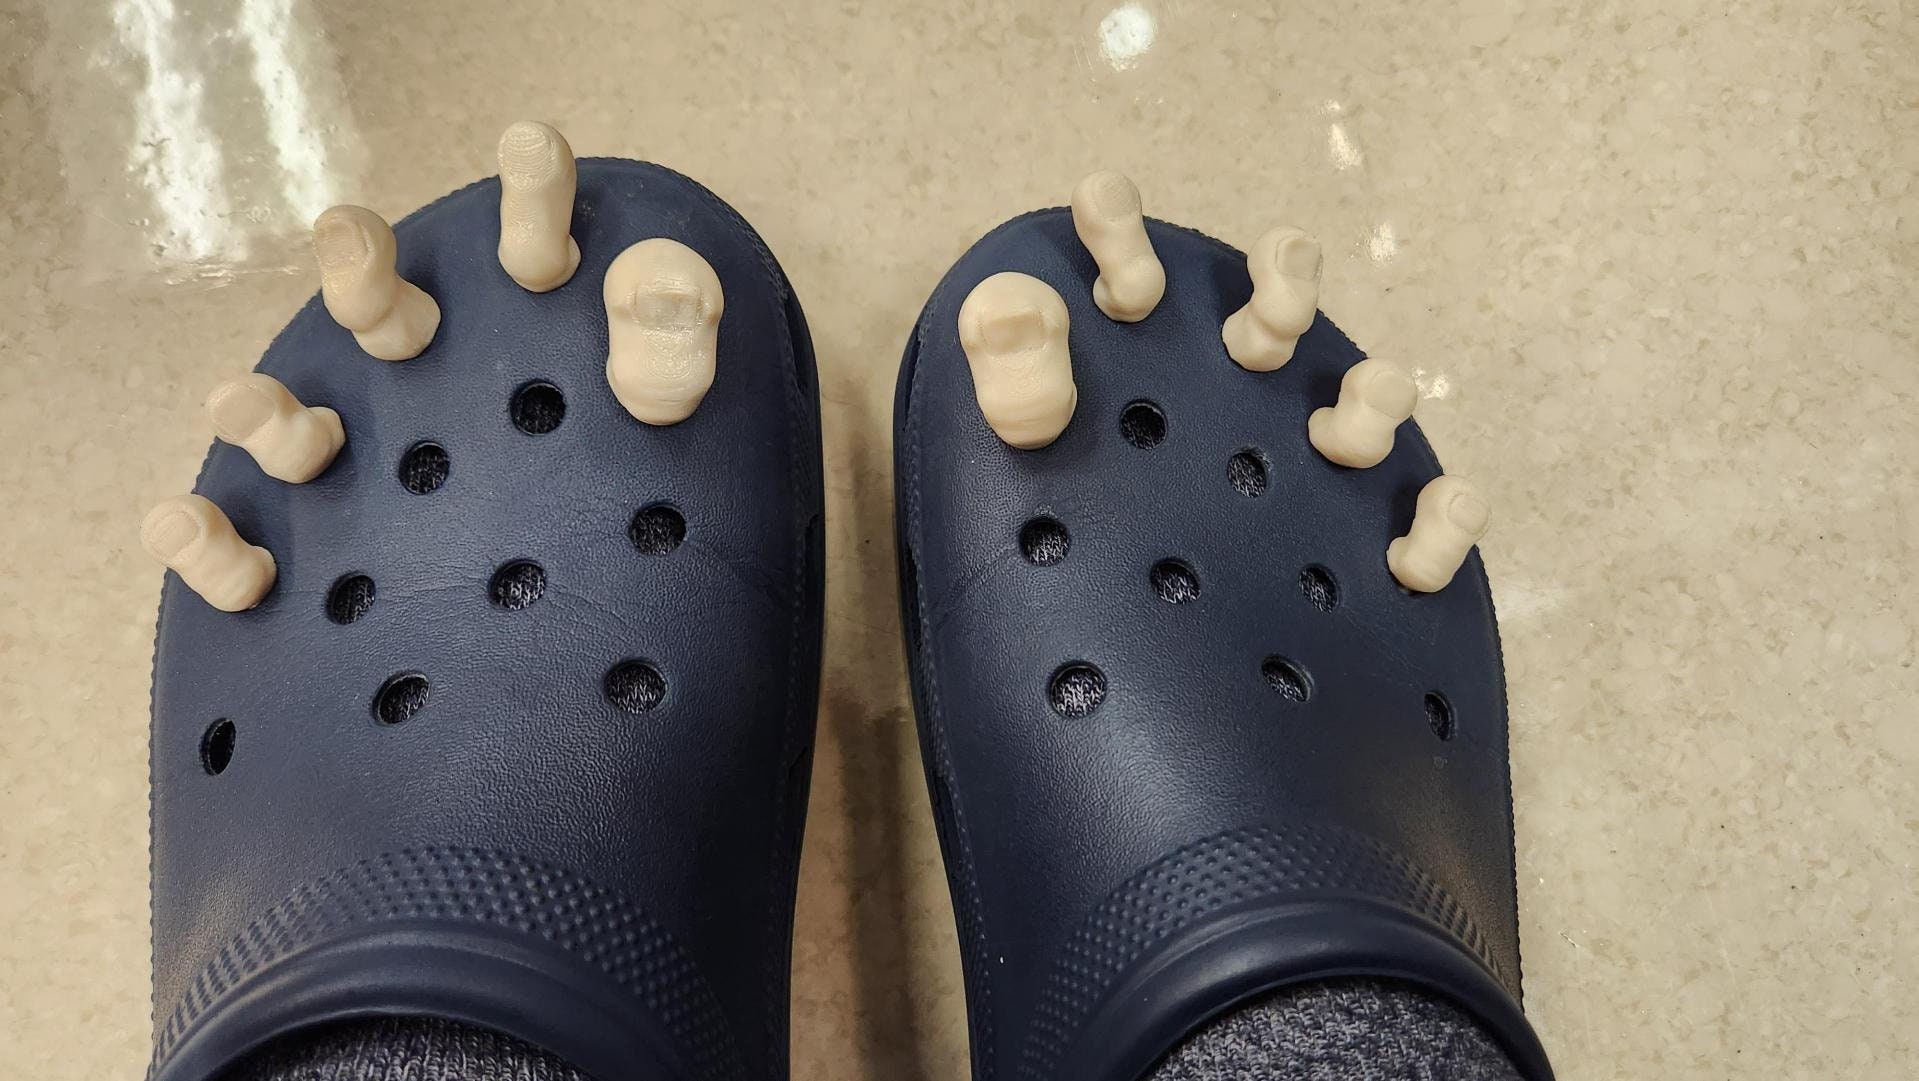 Spooky Crocs 😈  Crocs fashion, Crocs jibbitz ideas, Crocs